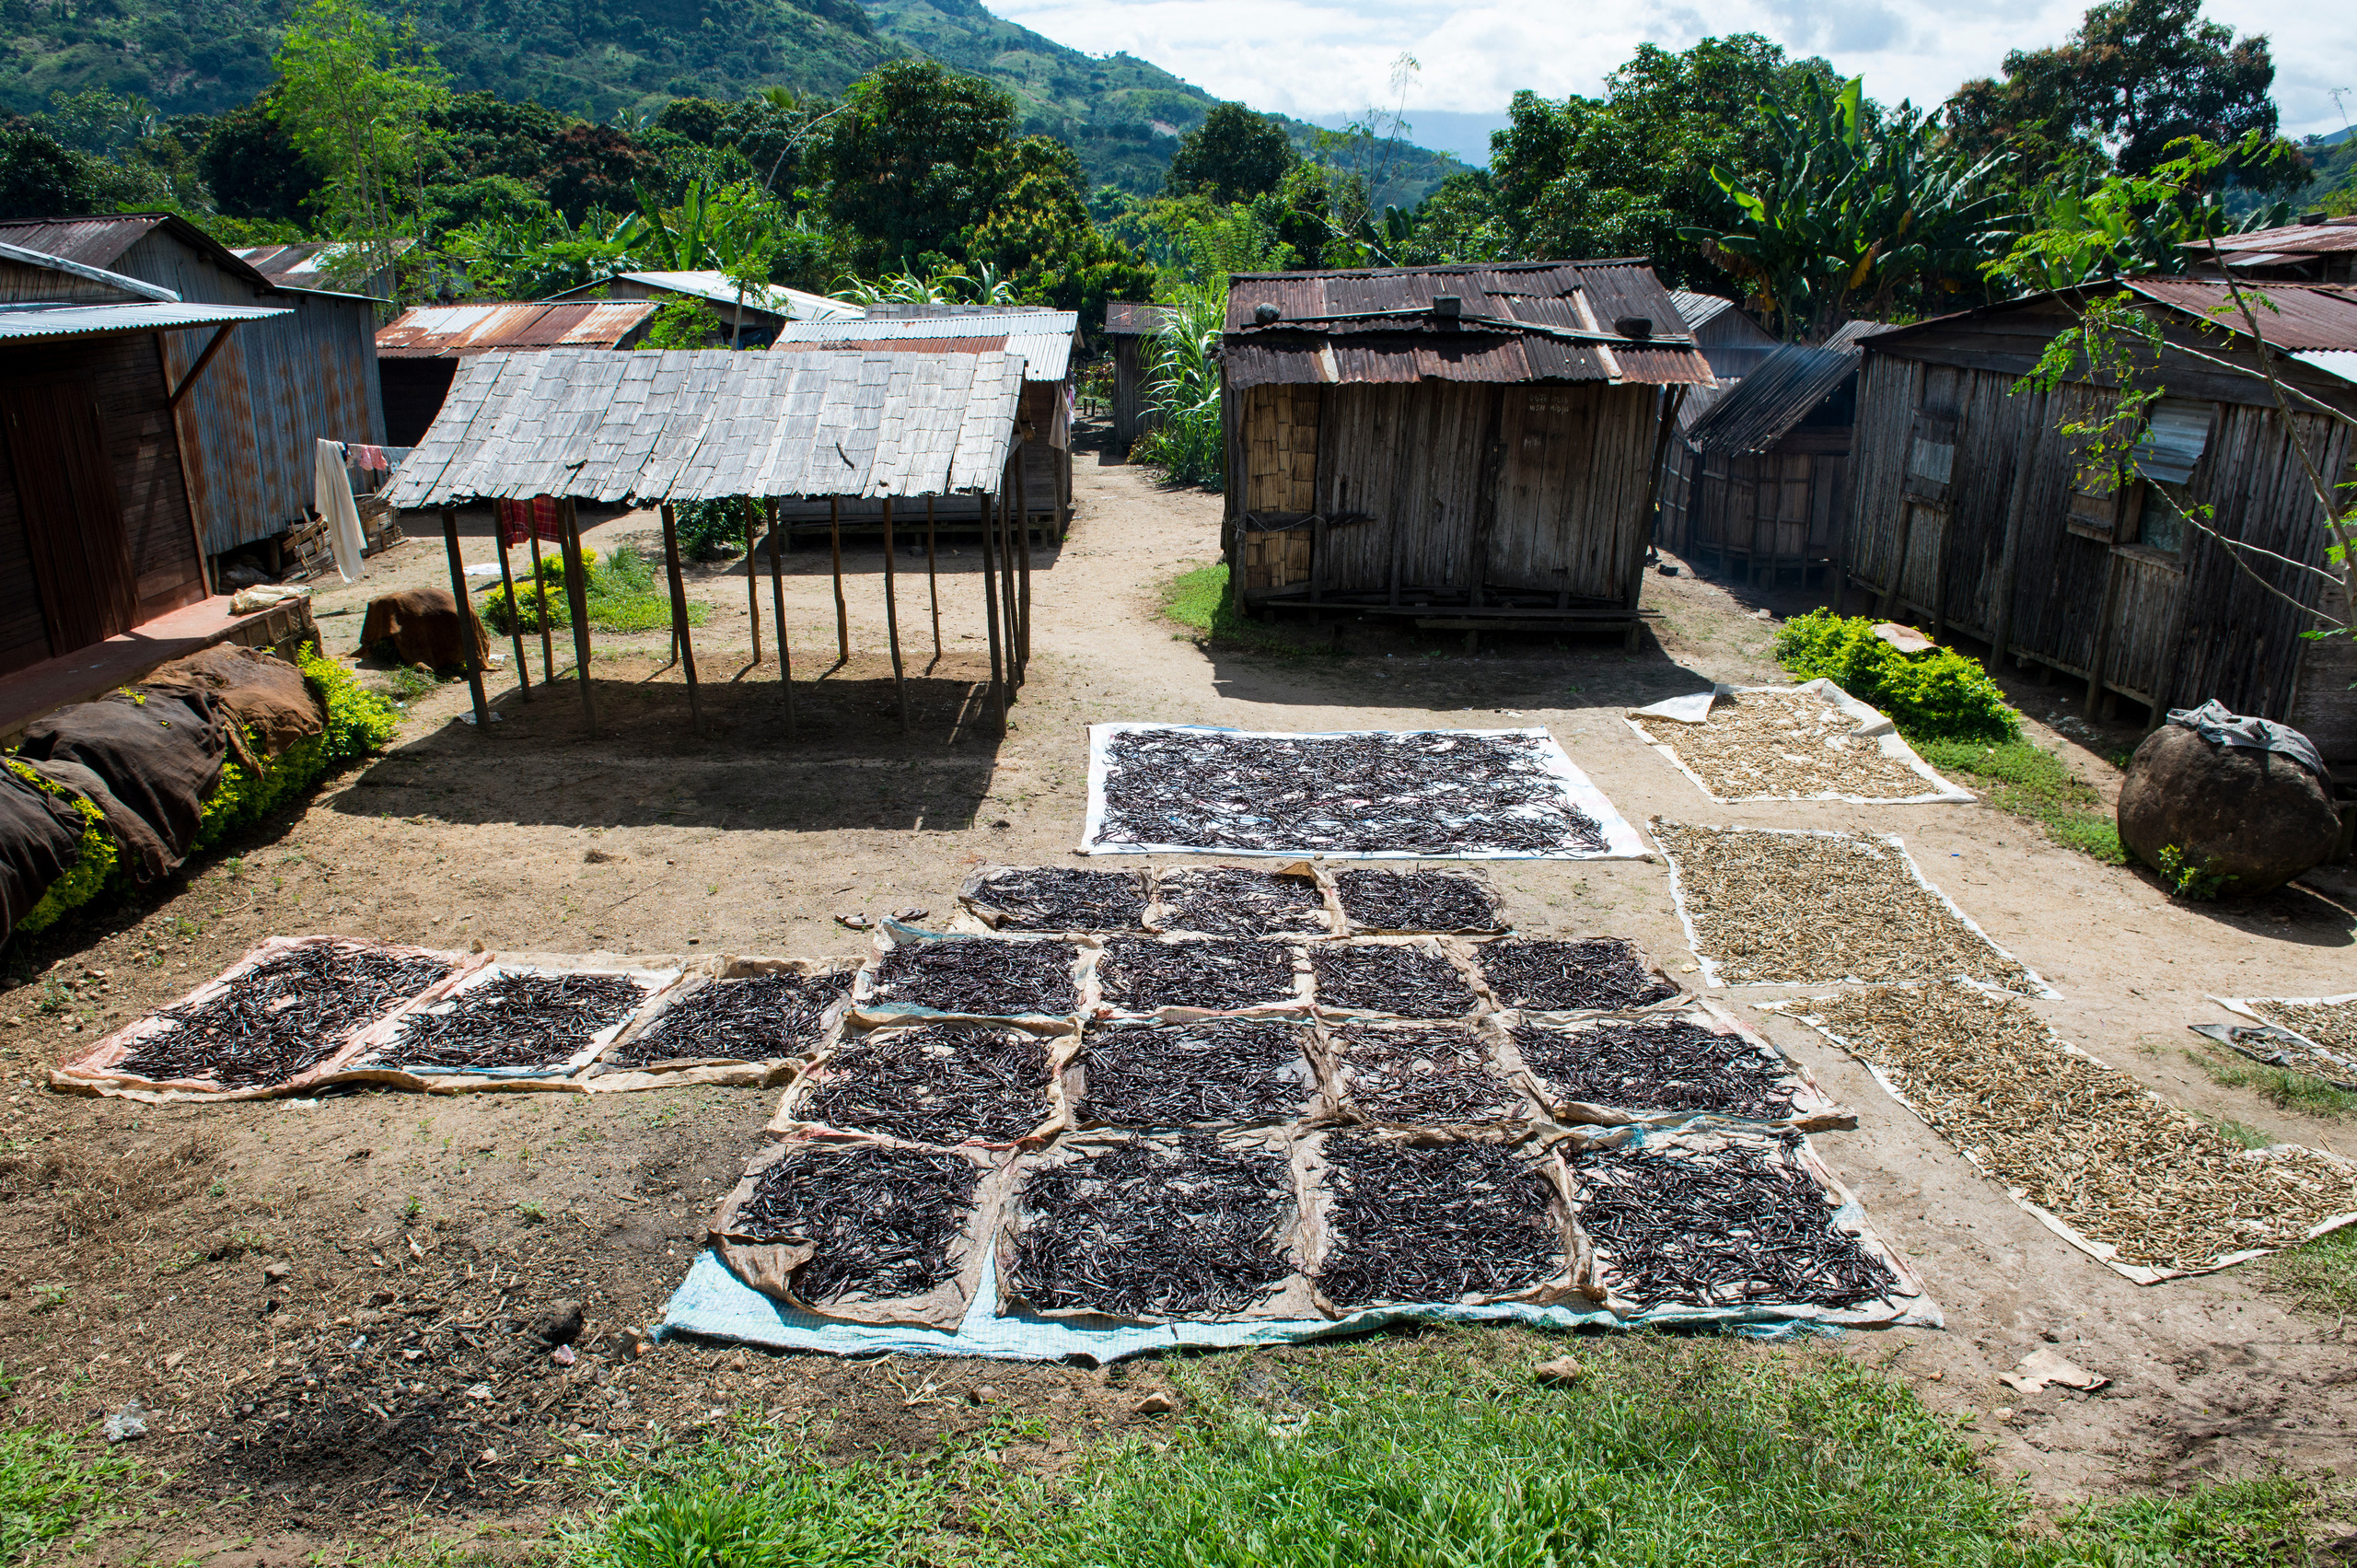 Vanilleschoten liegen in einem Dorf auf Planen zum Trocknen in der Sonne.